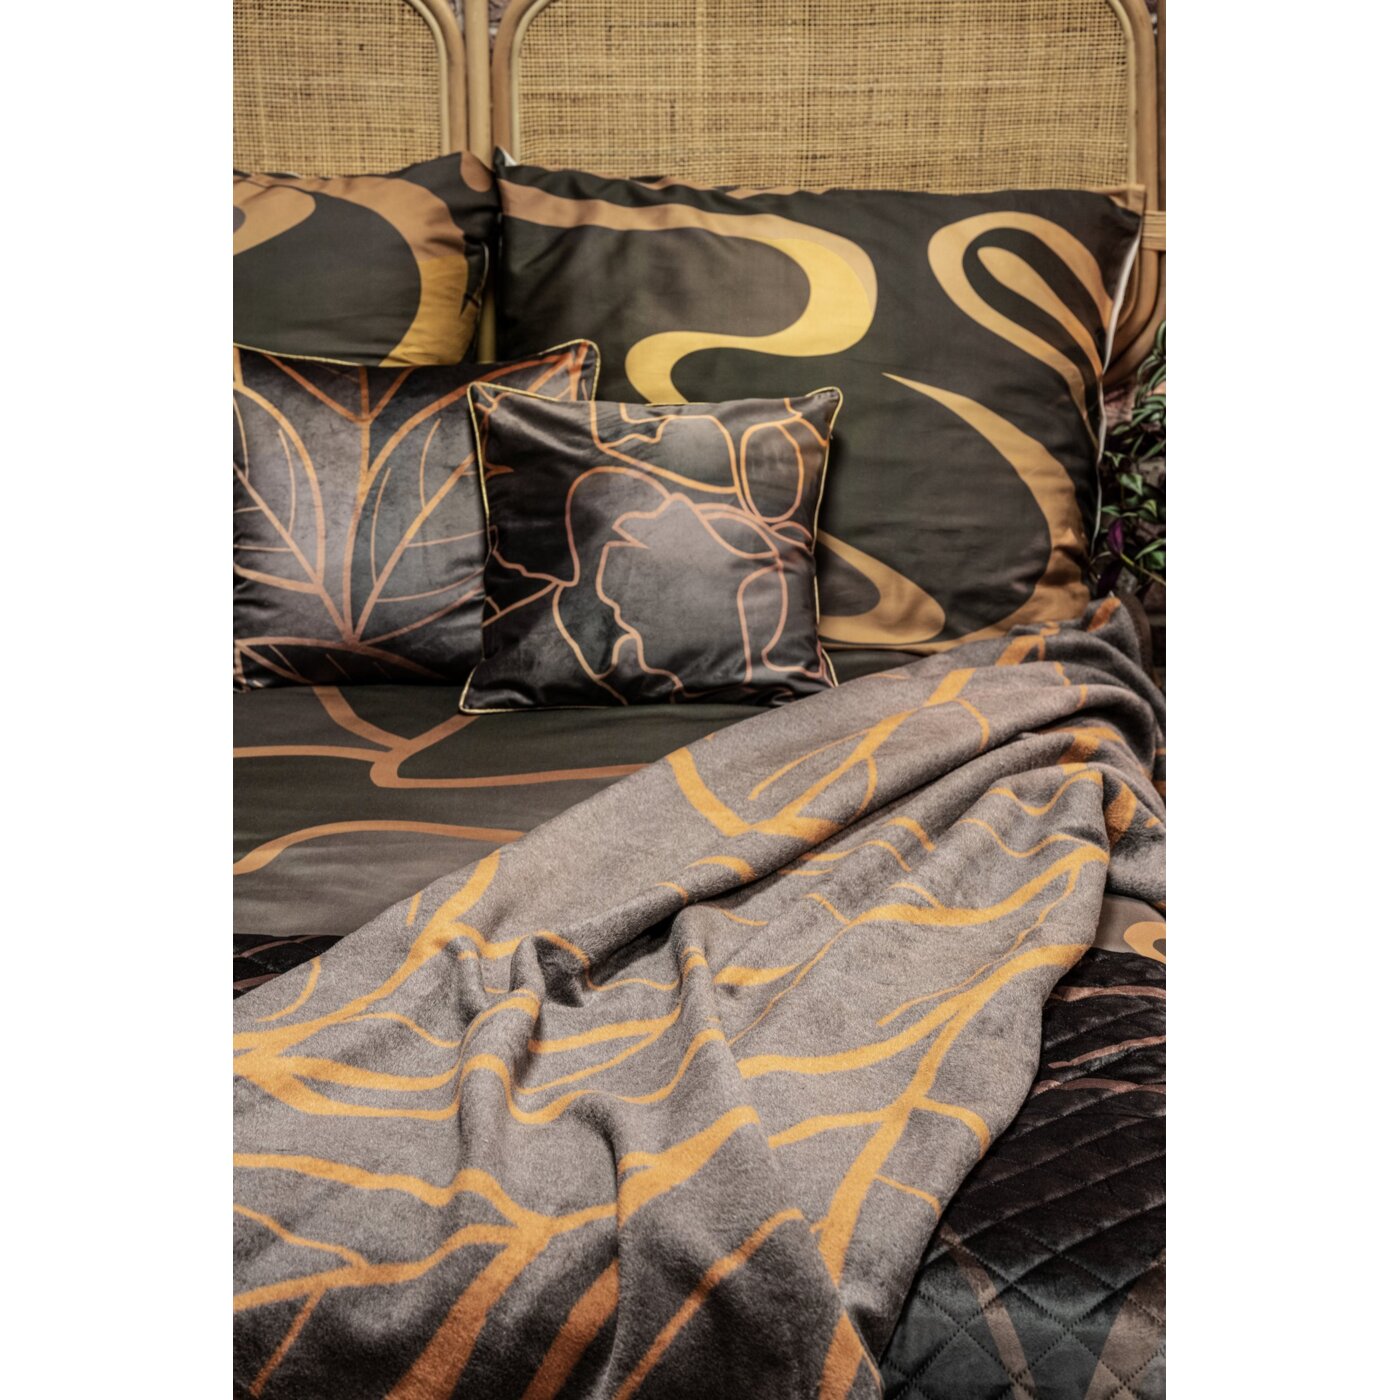 Pătură decorată cu un motiv de frunze mari, maro, bej ALISMA 2-COLECȚIE LIMITATĂ Perdele de Poveste